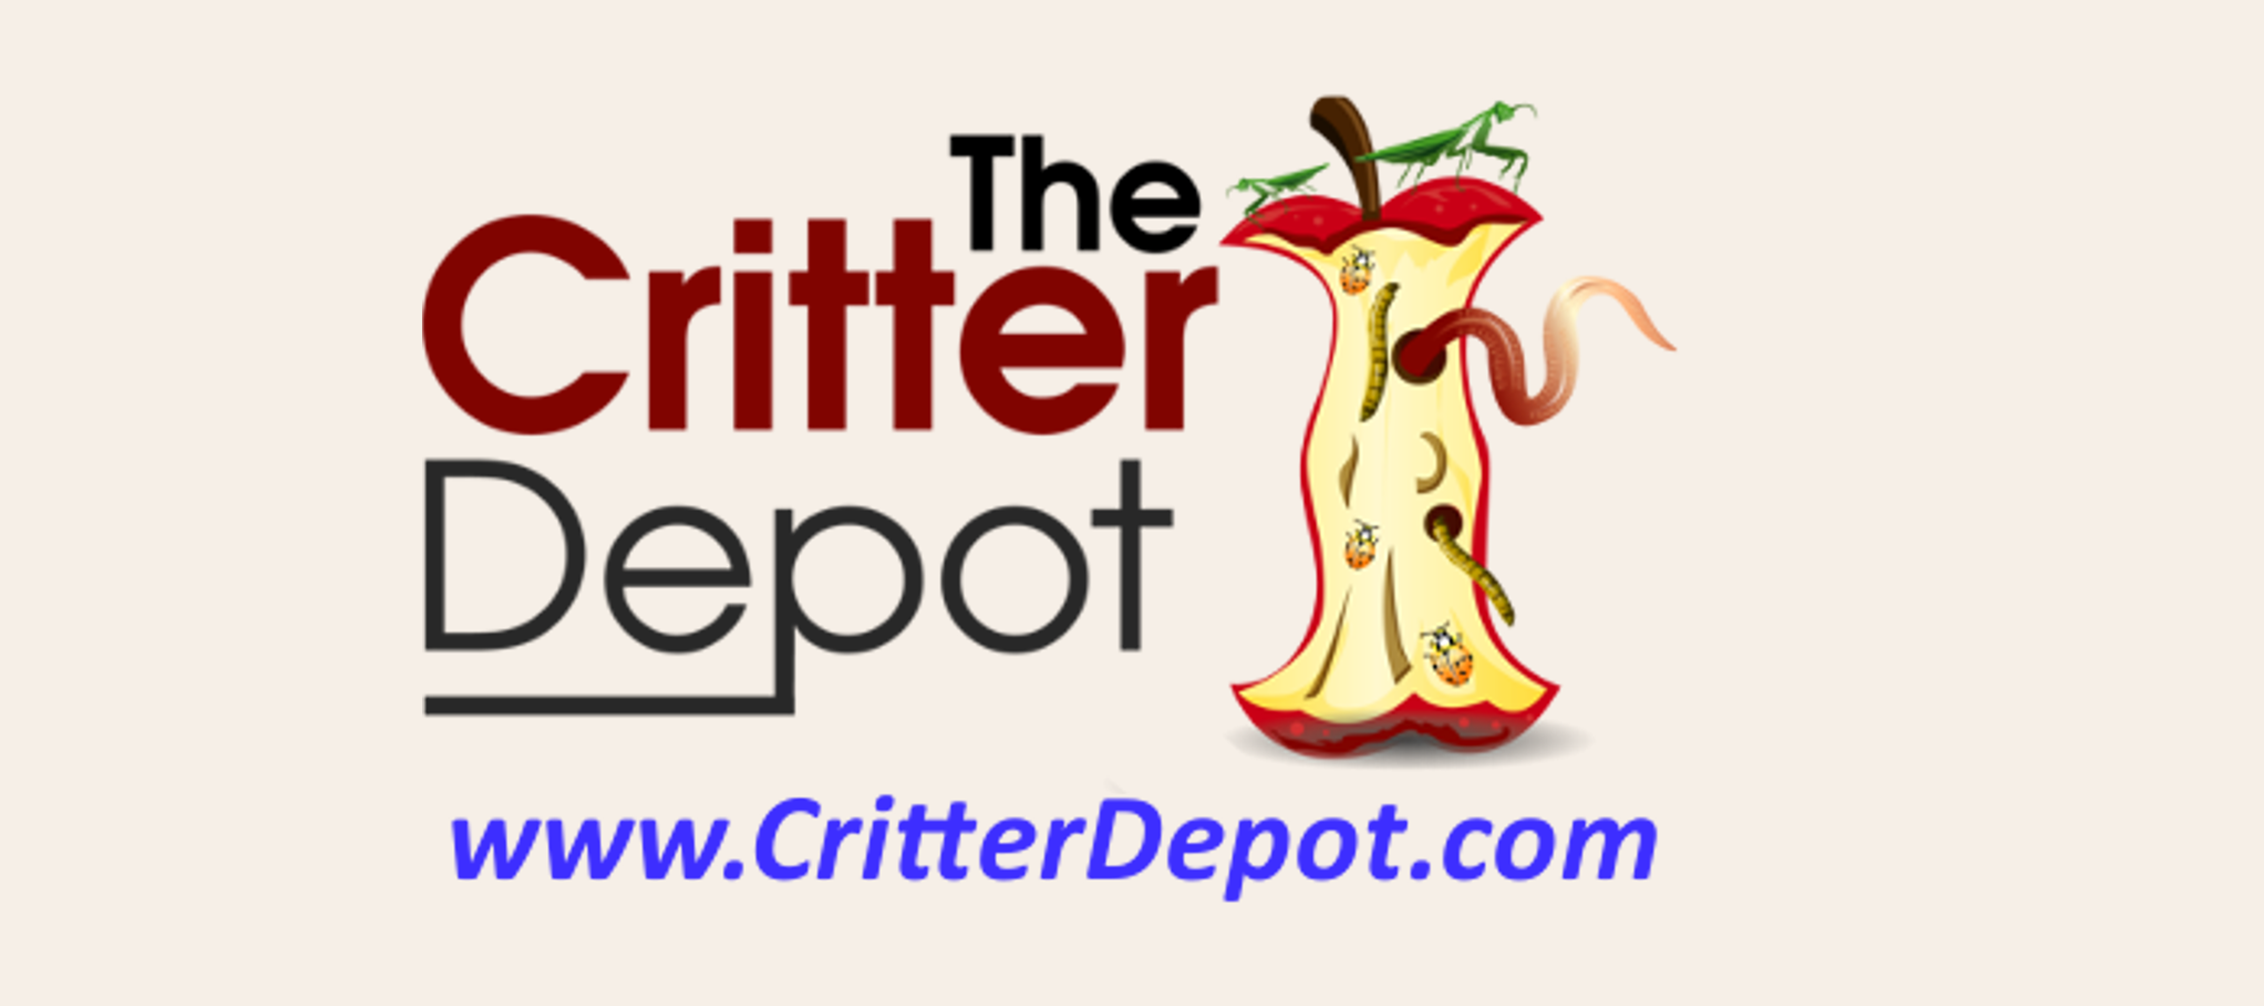 Critter Depot WEB v2